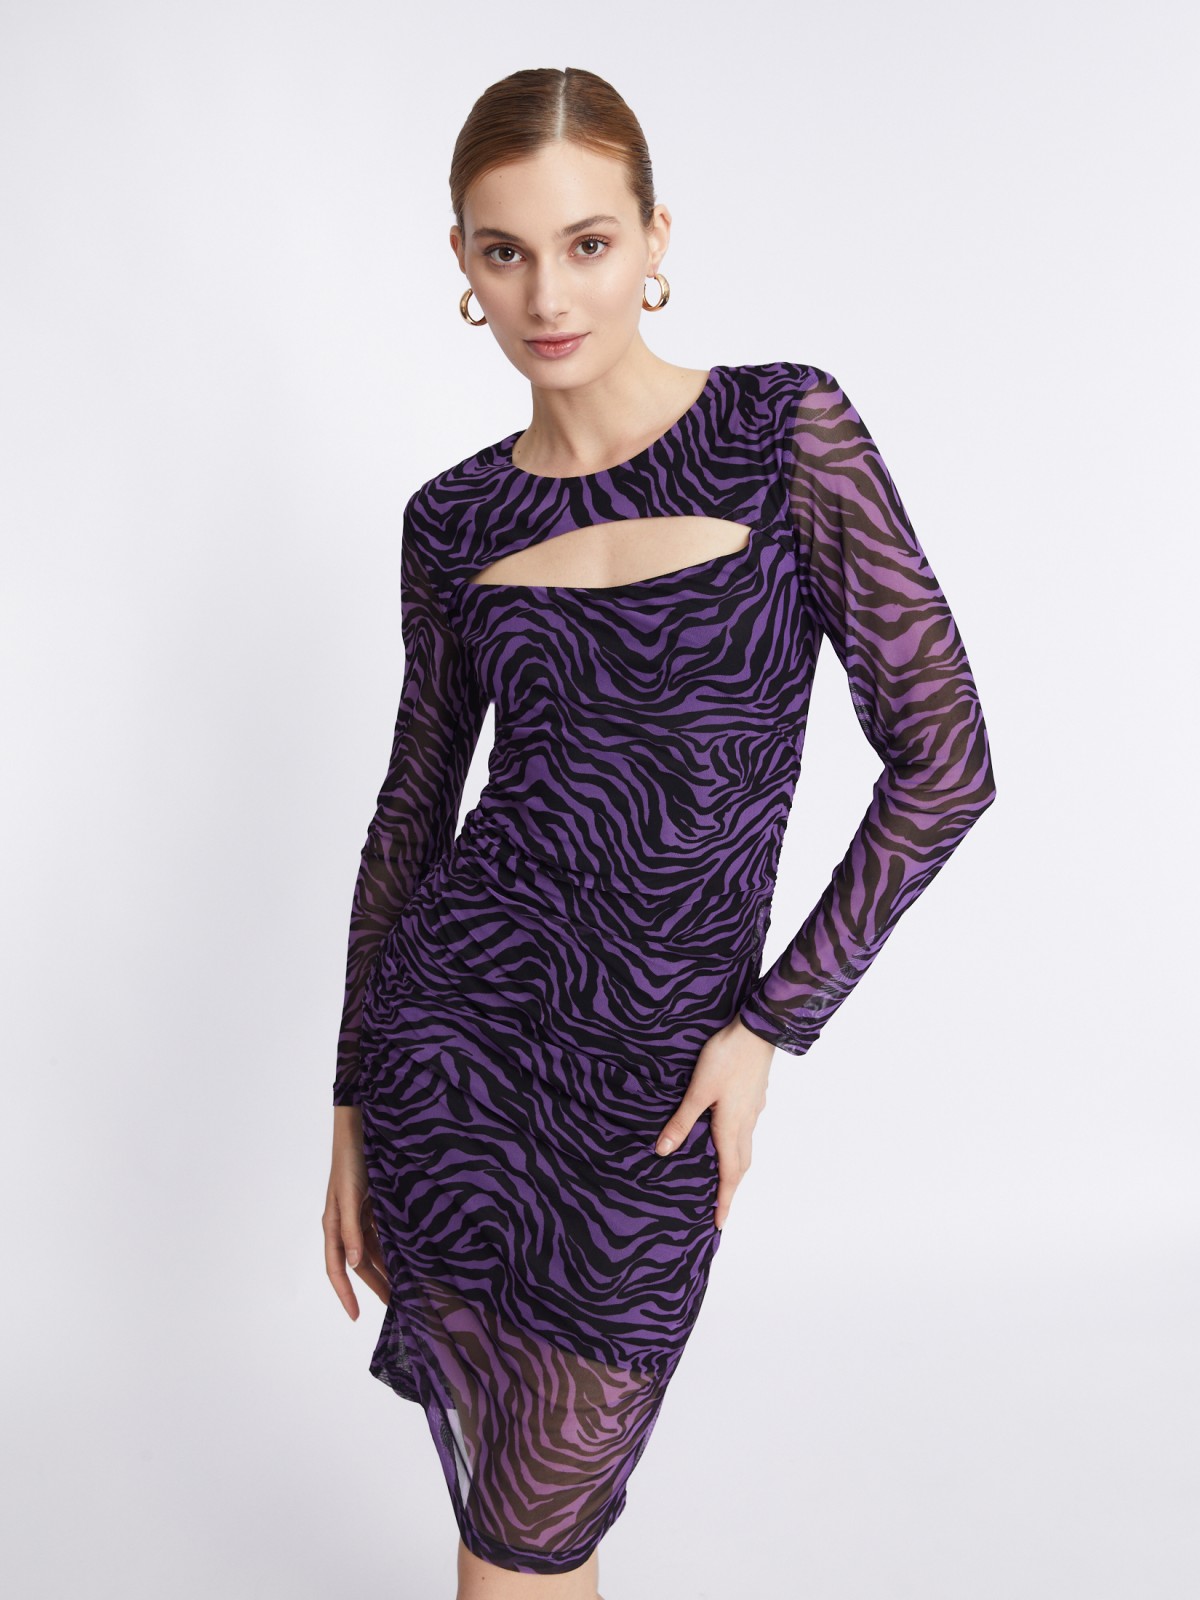 Платье из сетчатой ткани длины мини с драпировкой и разрезом на груди zolla 223338159071, цвет фиолетовый, размер S - фото 1